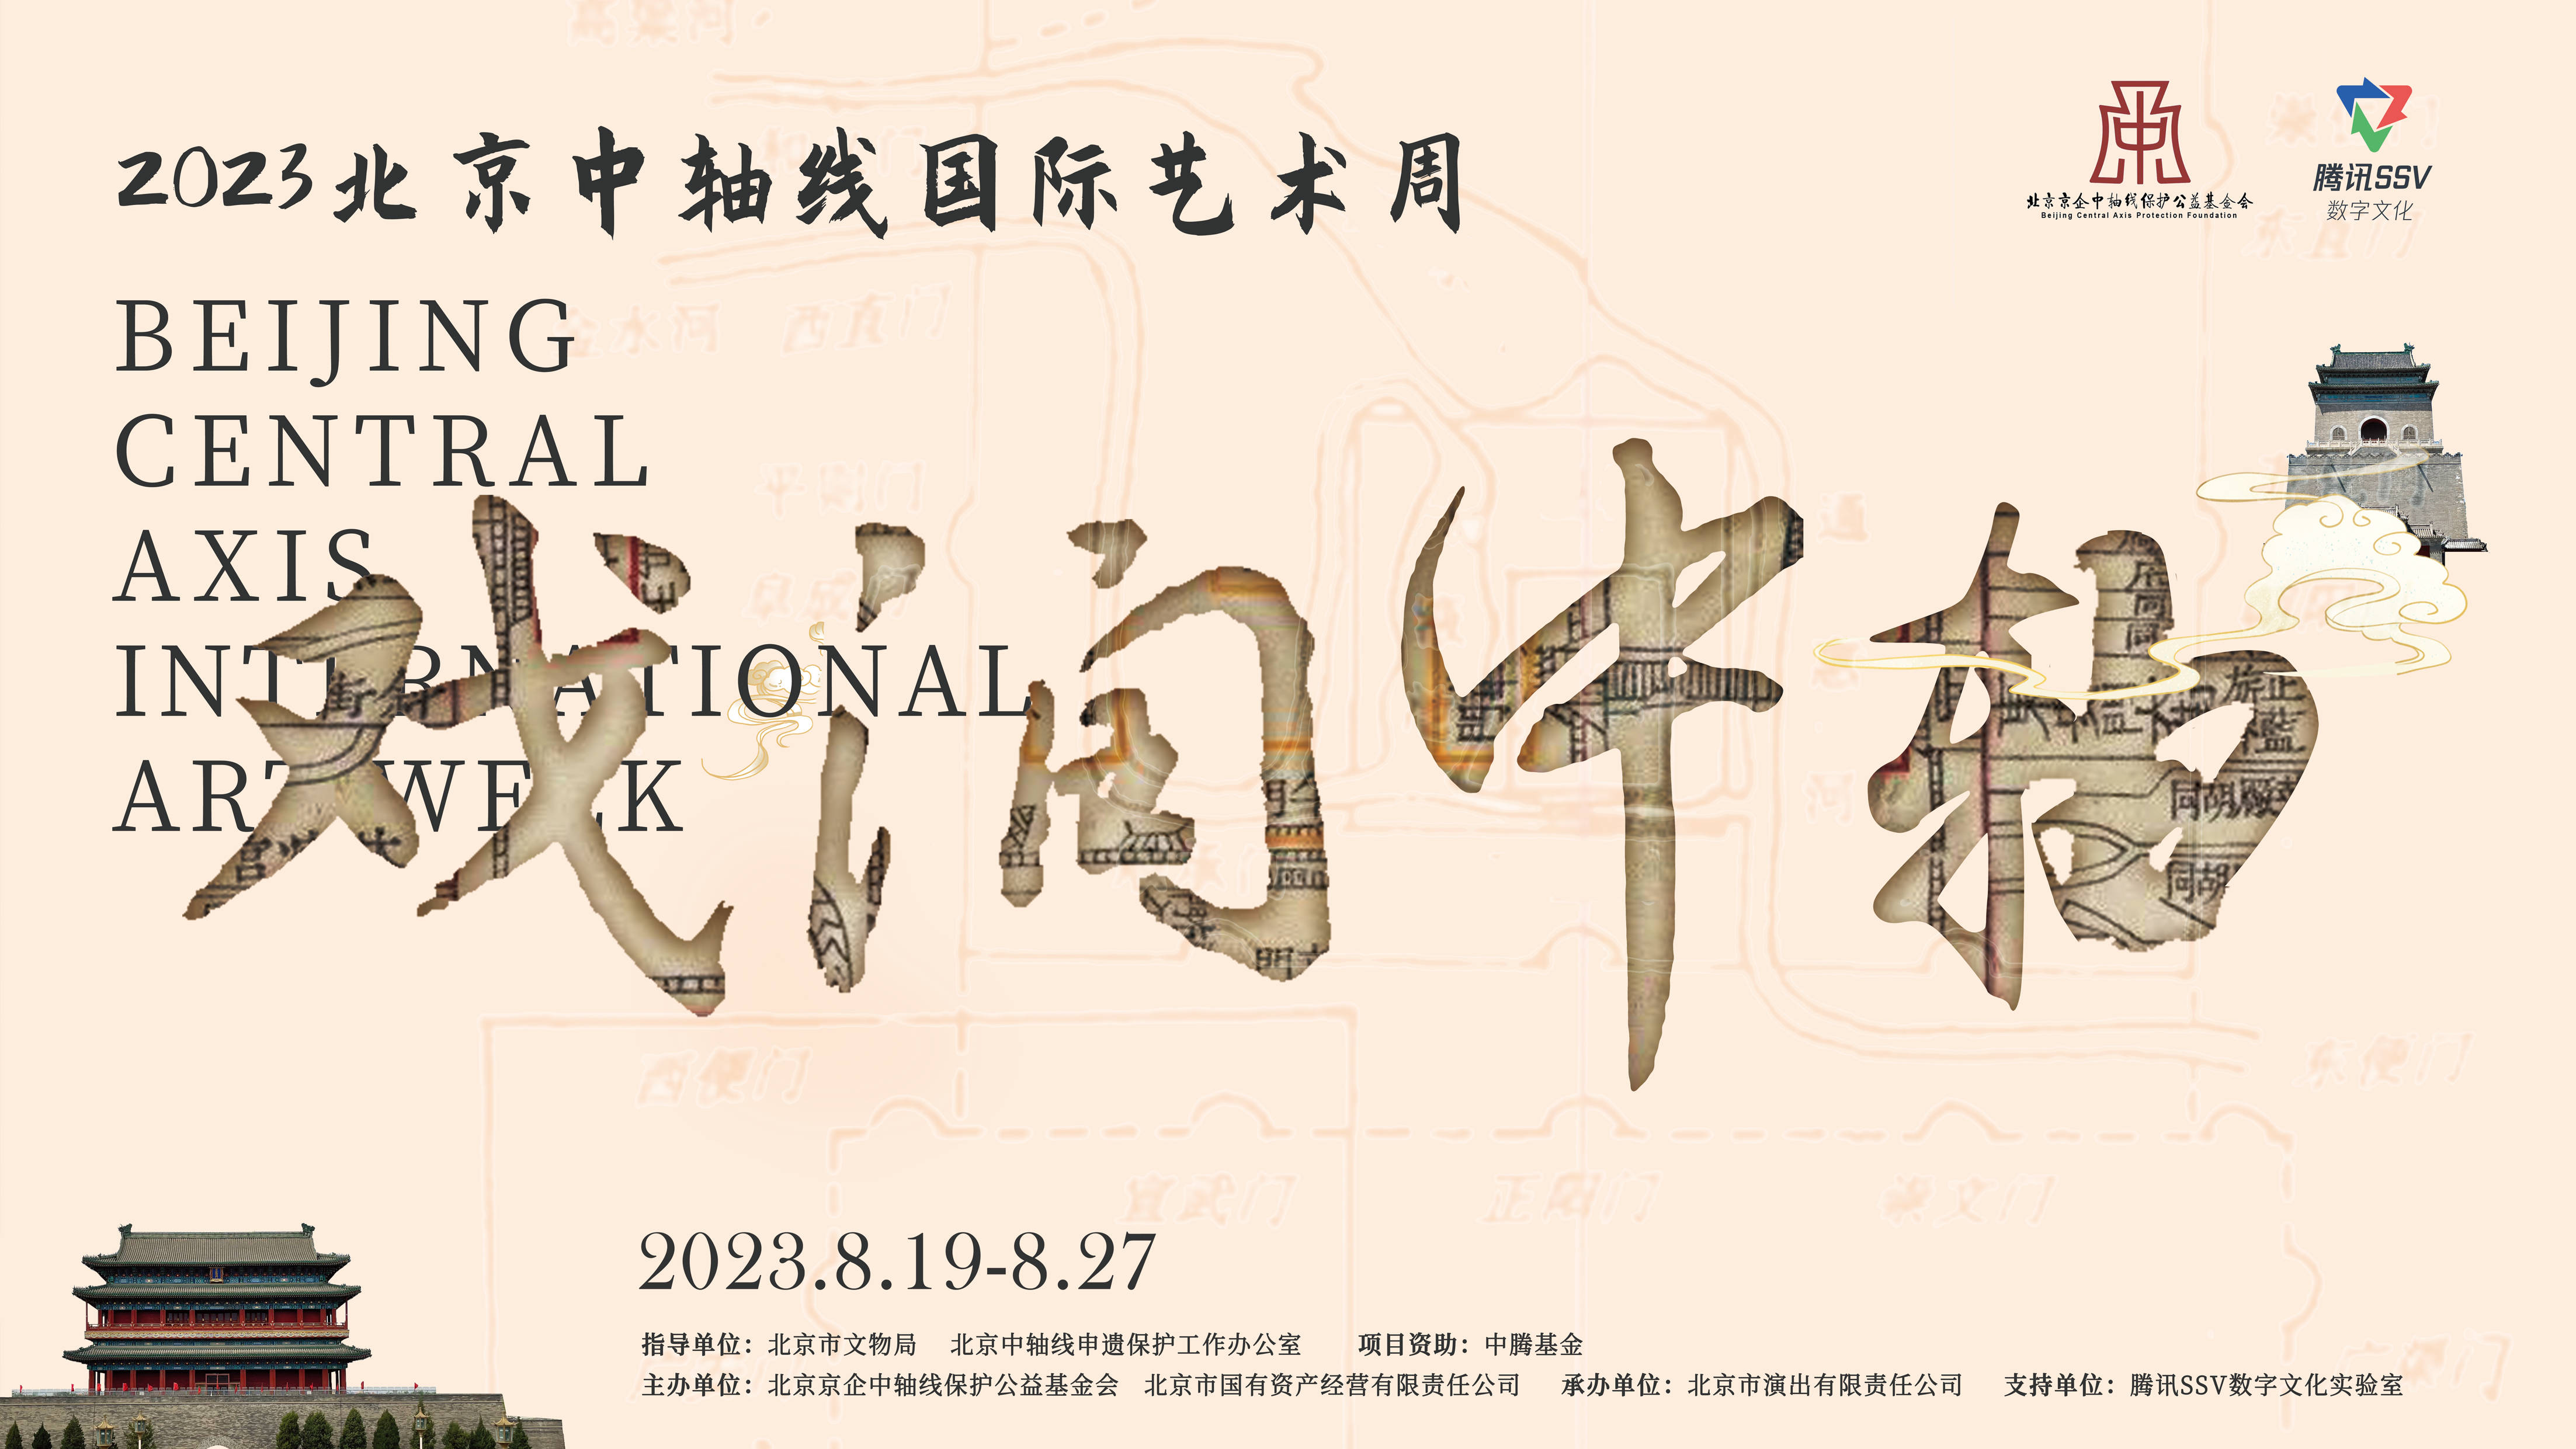 戏脉传承，戏润中轴 ——2023北京中轴线国际艺术周即将开启